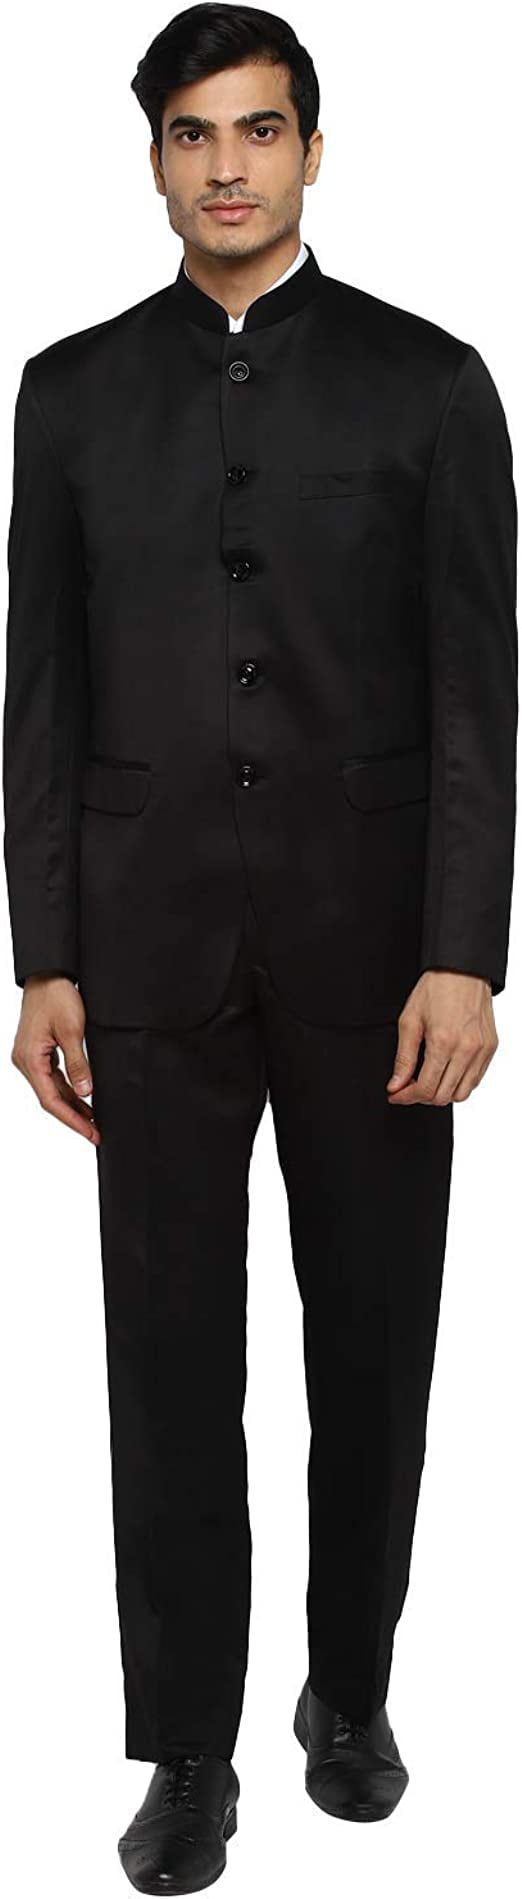 Royal Kurta Men's Regular Fit Bandhgala Suit (12312_Black_Coat-38 &  Pant-32) : Amazon.in: Fashion